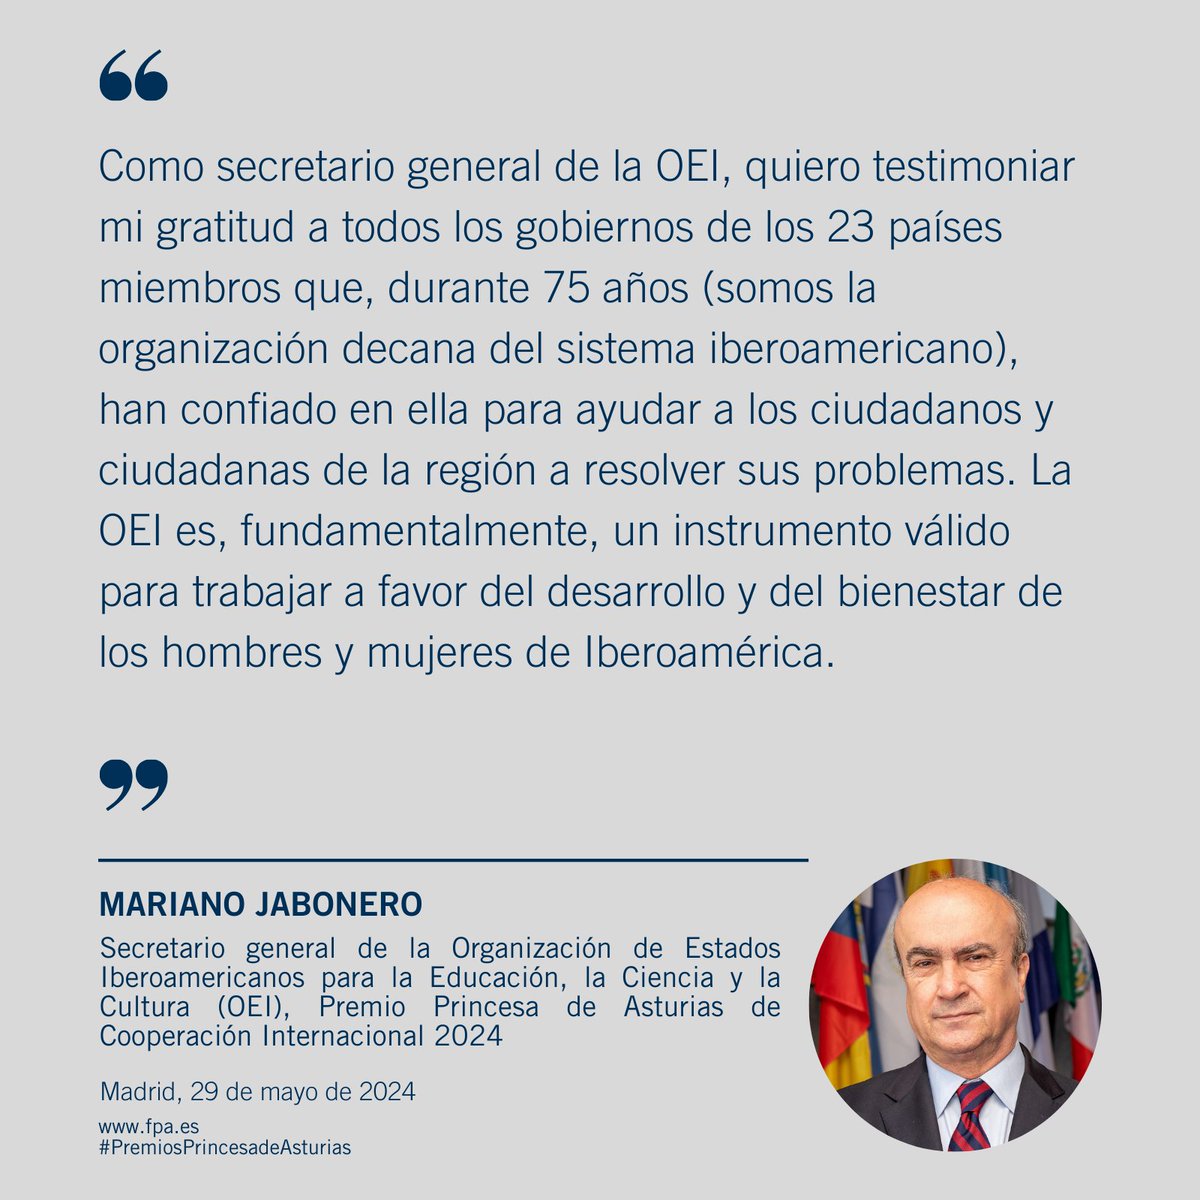 Declaraciones de Mariano Jabonero, secretario general la Organización de Estados Iberoamericanos para la Educación, la Ciencia y la Cultura (OEI) tras la concesión del Premio Princesa de Asturias de Cooperación Internacional 2024. Puedes ver sus declaraciones completas en este